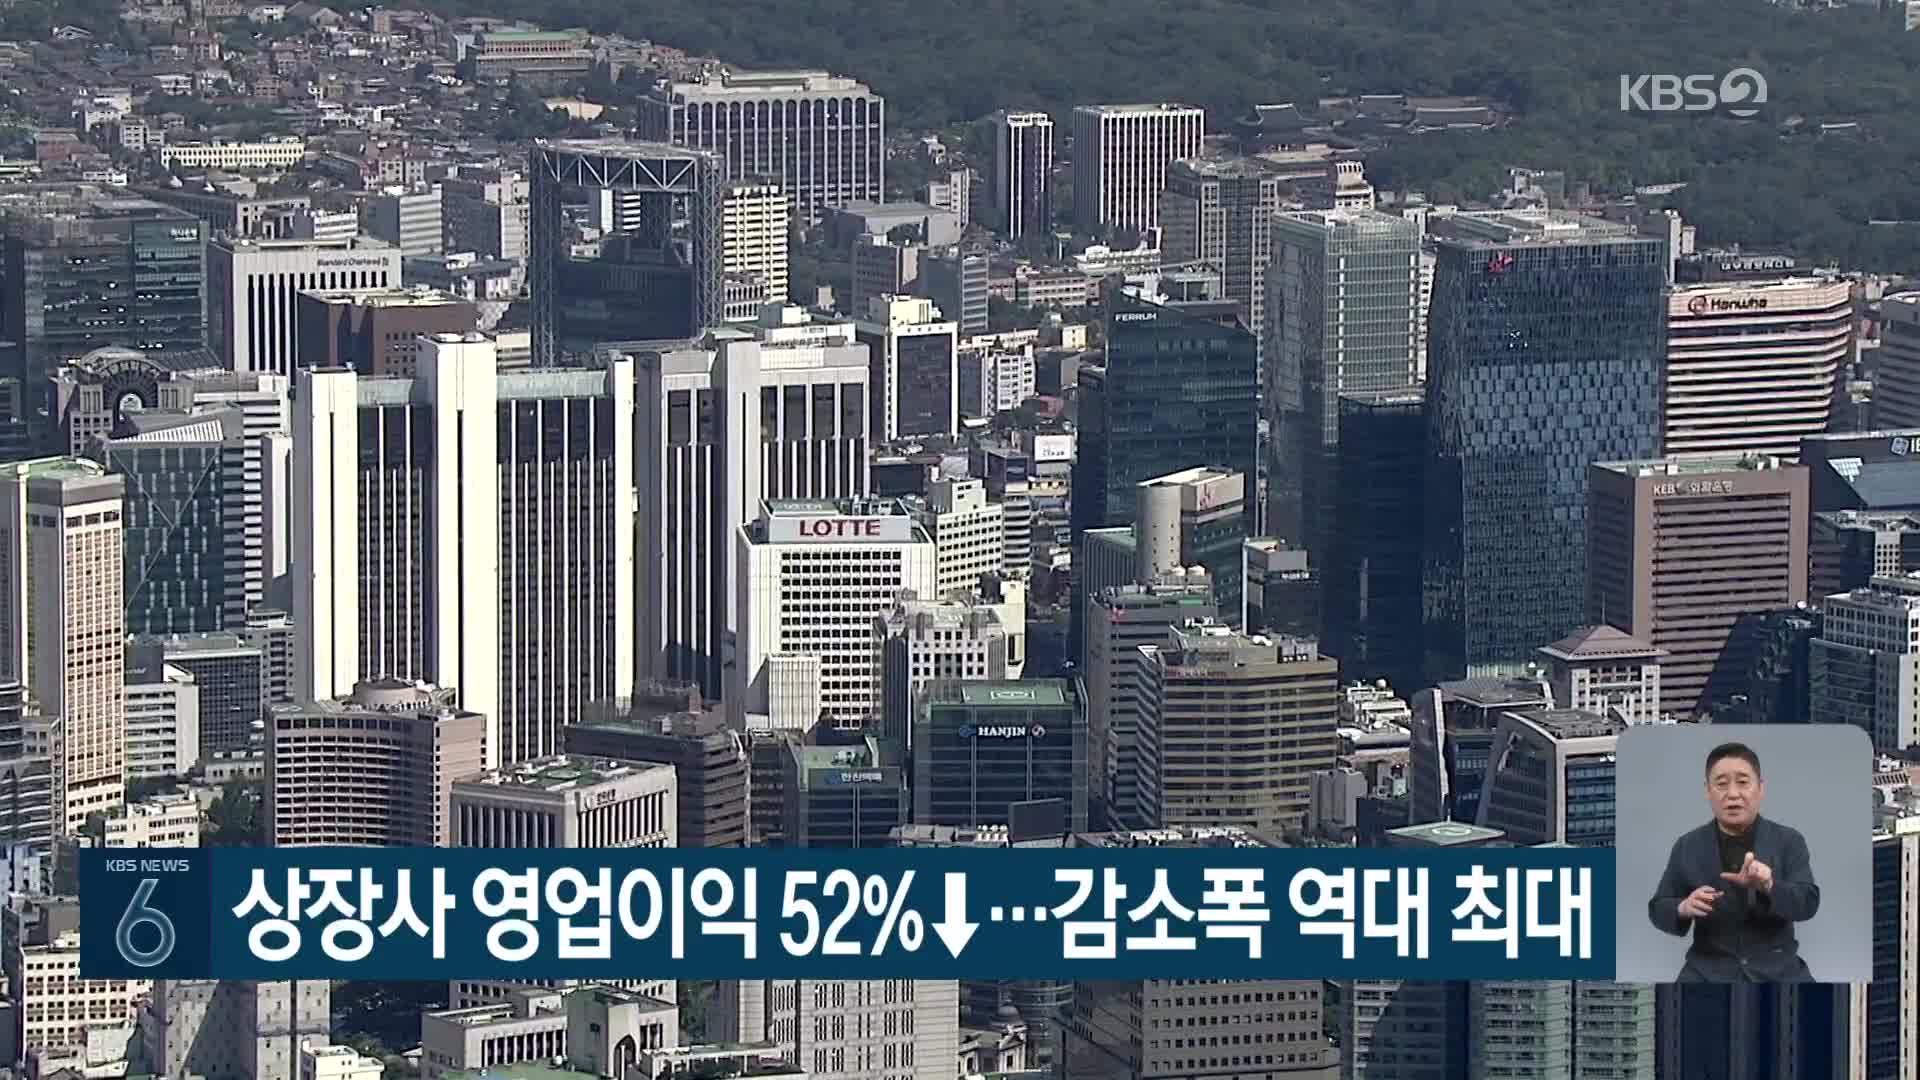 상장사 영업이익 52%↓…감소폭 역대 최대